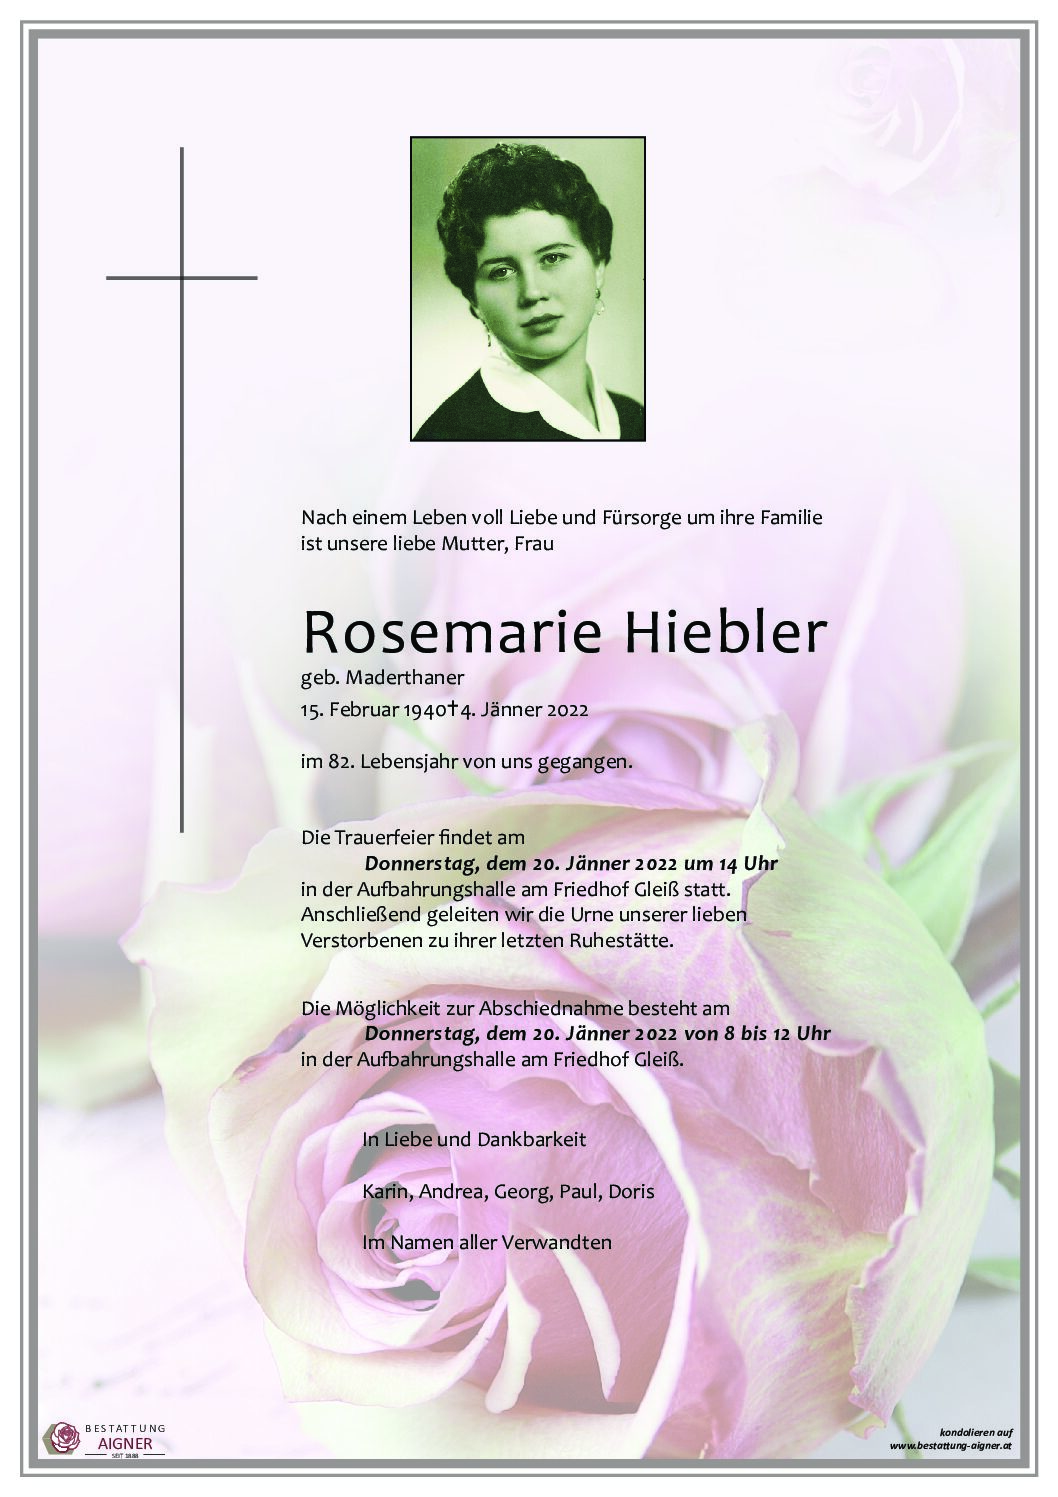 Rosemarie Hiebler